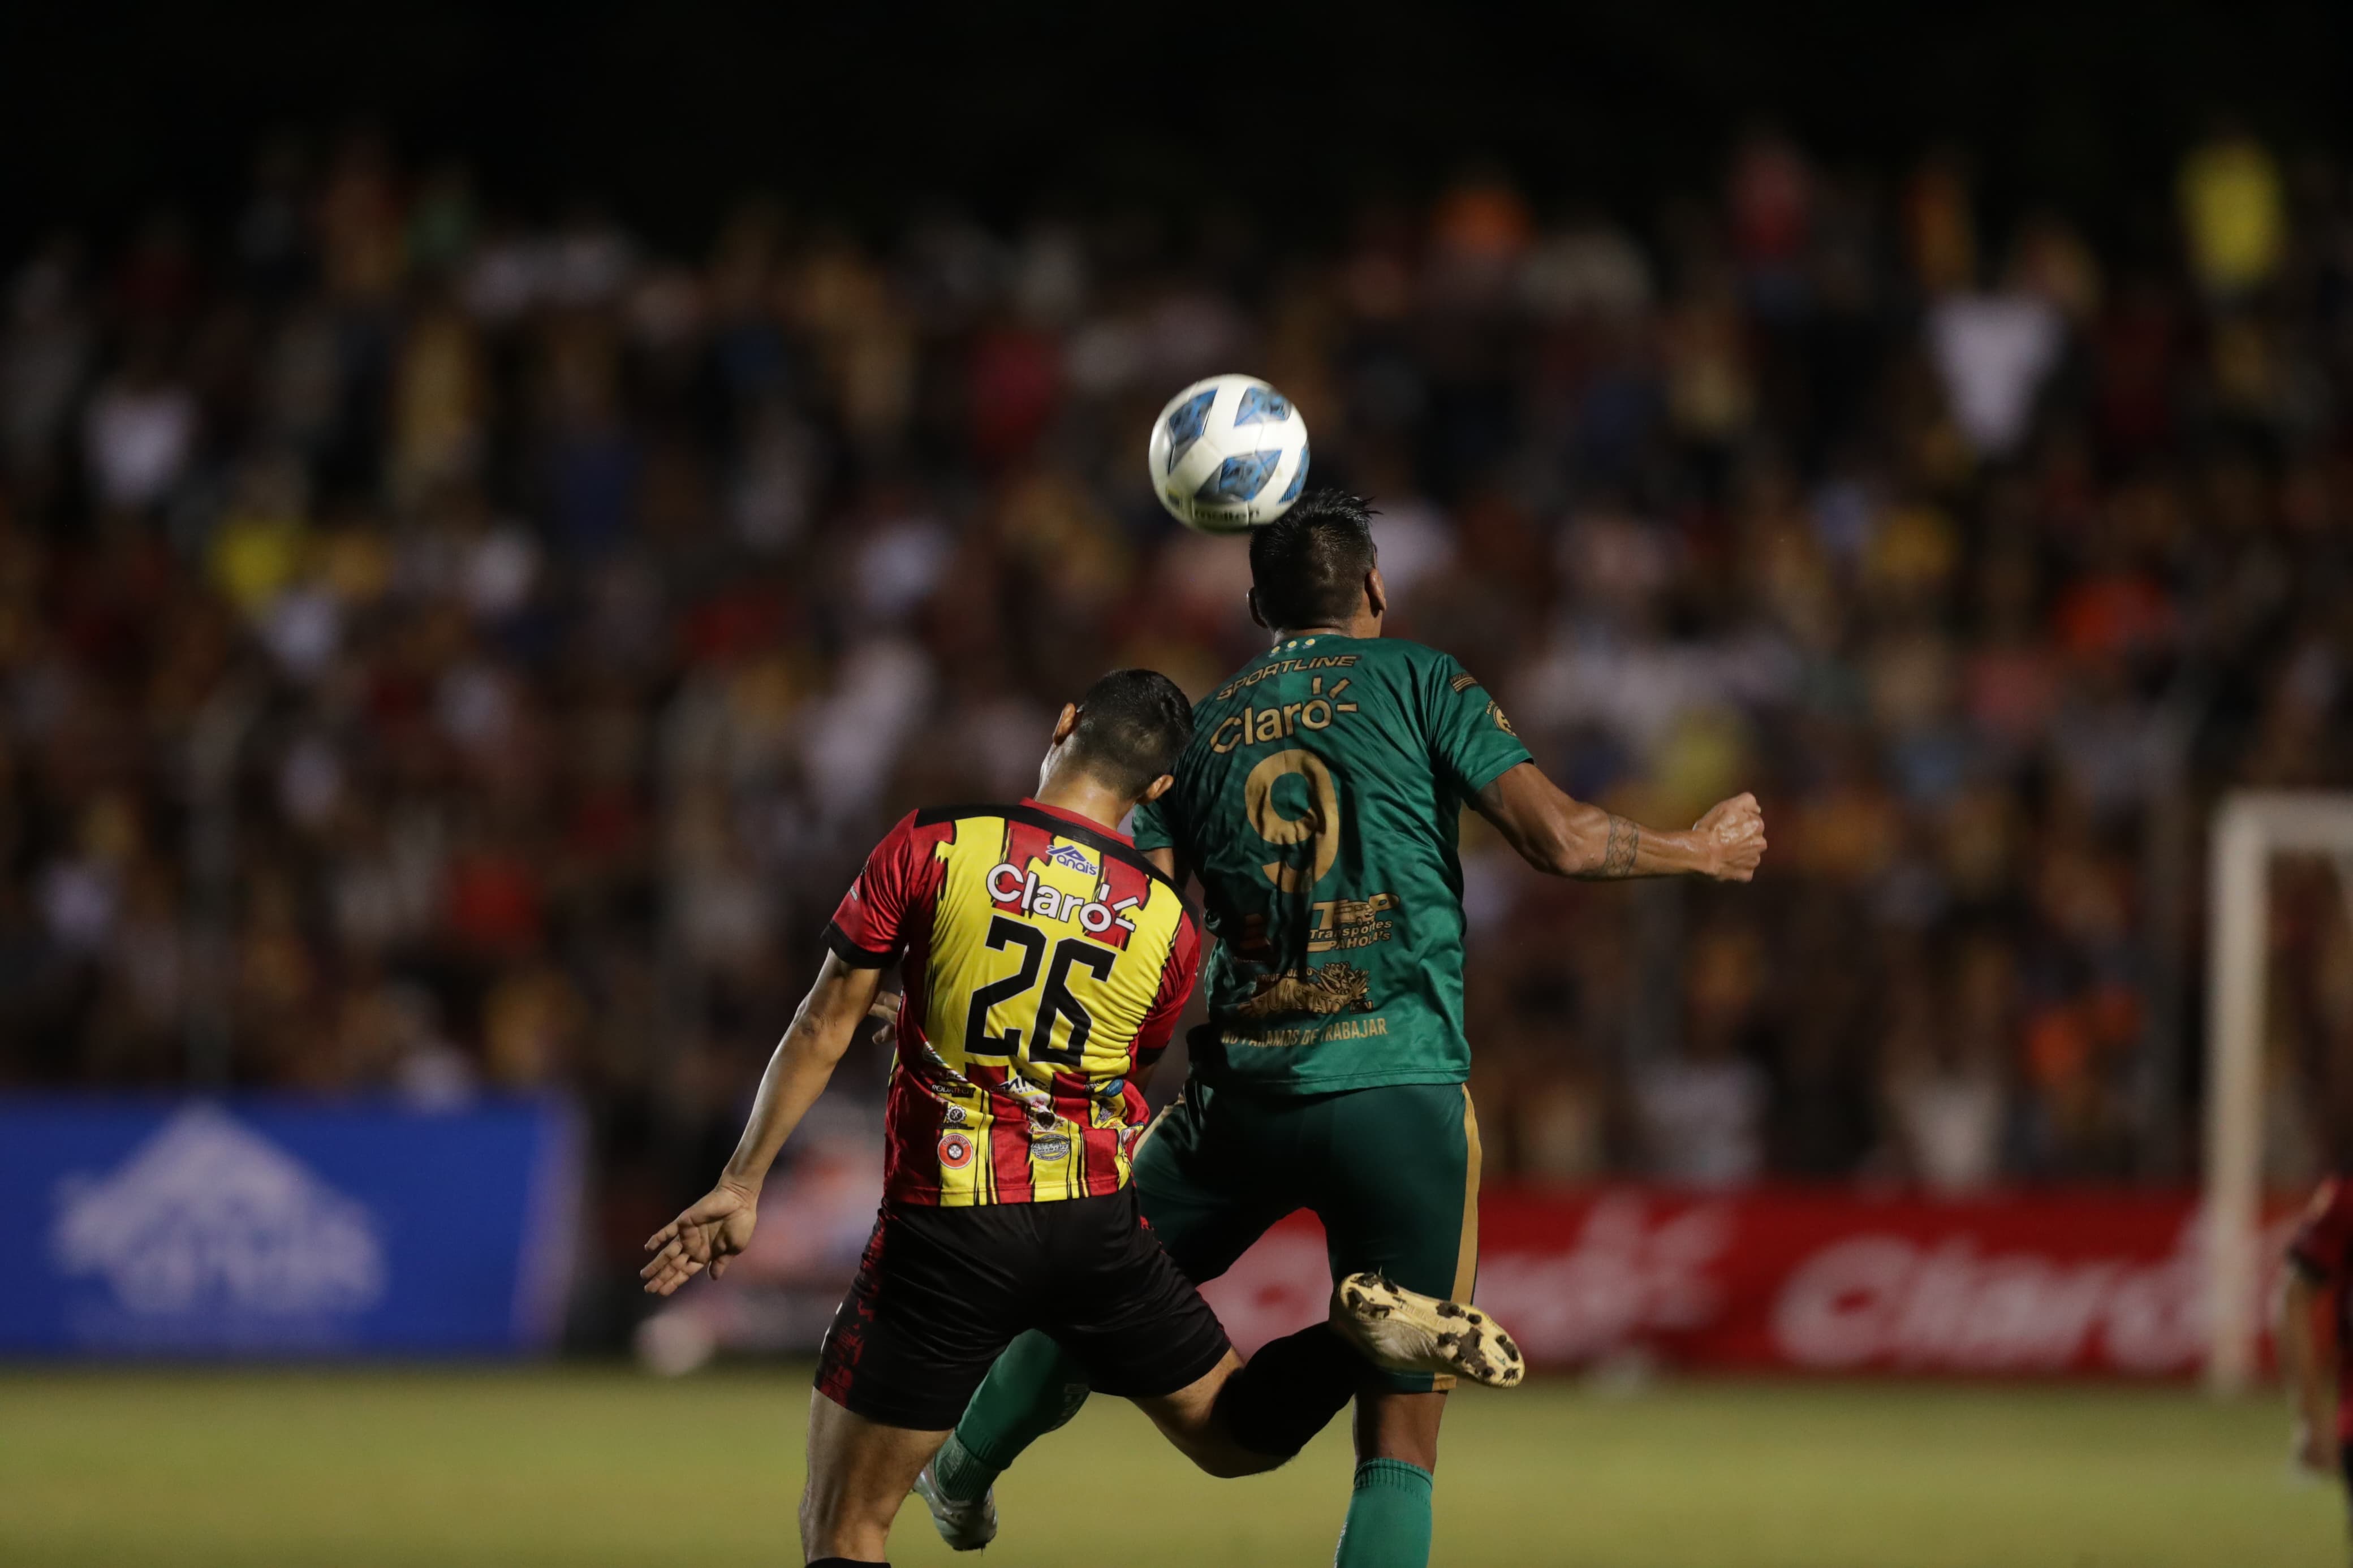 El encuentro semifinal de ida finalizó 1-1 entre Zacapa y Guastatoya. Foto Prensa Libre (Douglas Suruy)